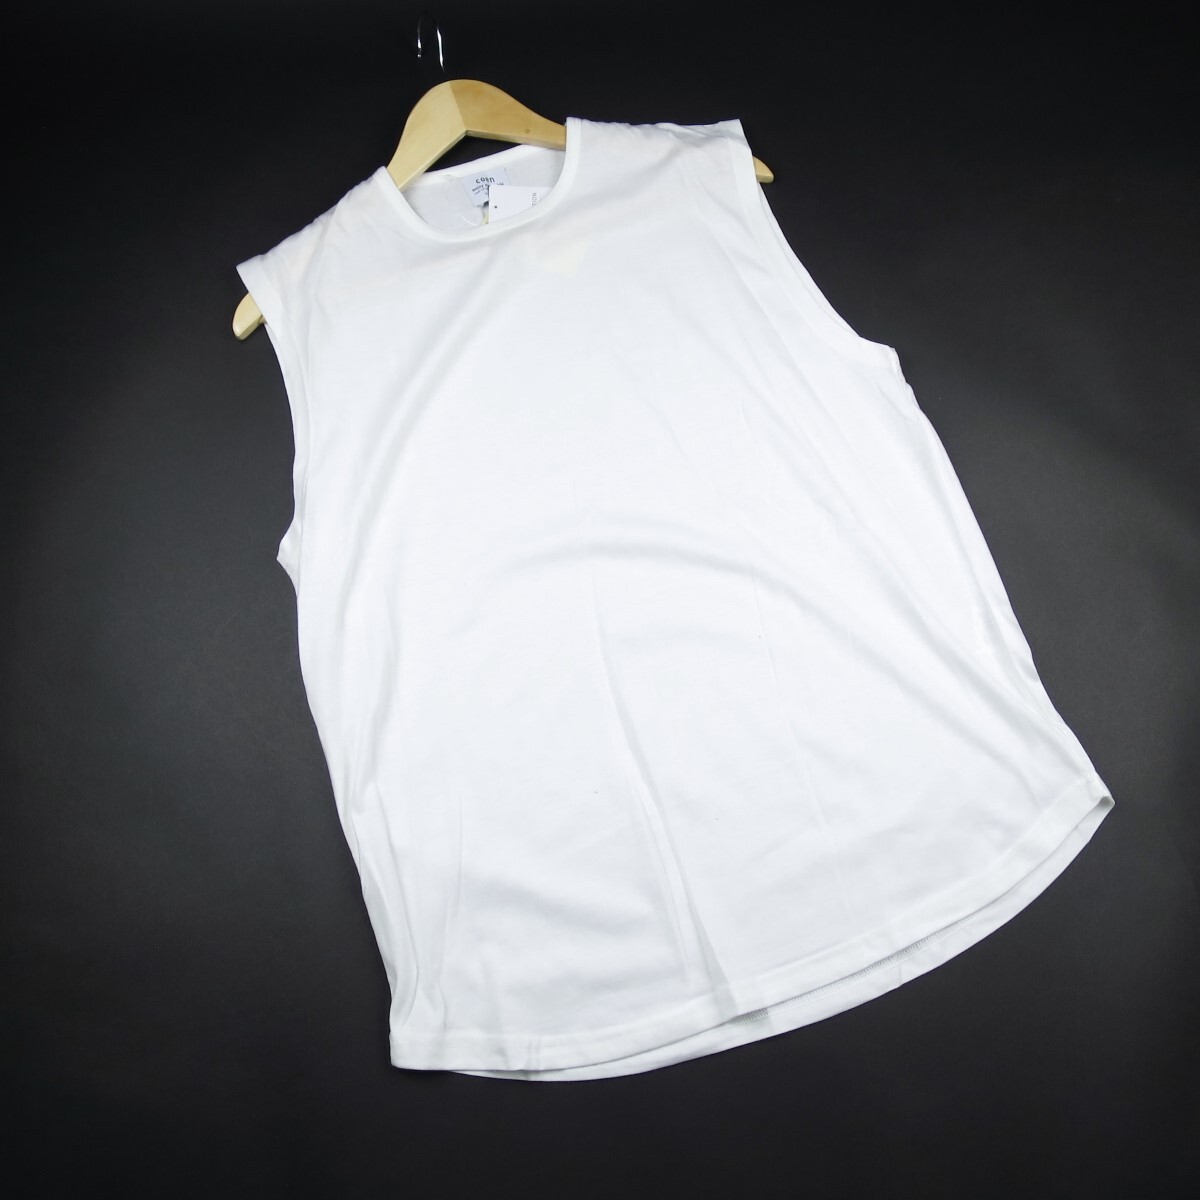  новый товар * United Arrows /ko-en/coen/ короткий рукав Layered футболка комплект 169/0970 чёрный /[XL]